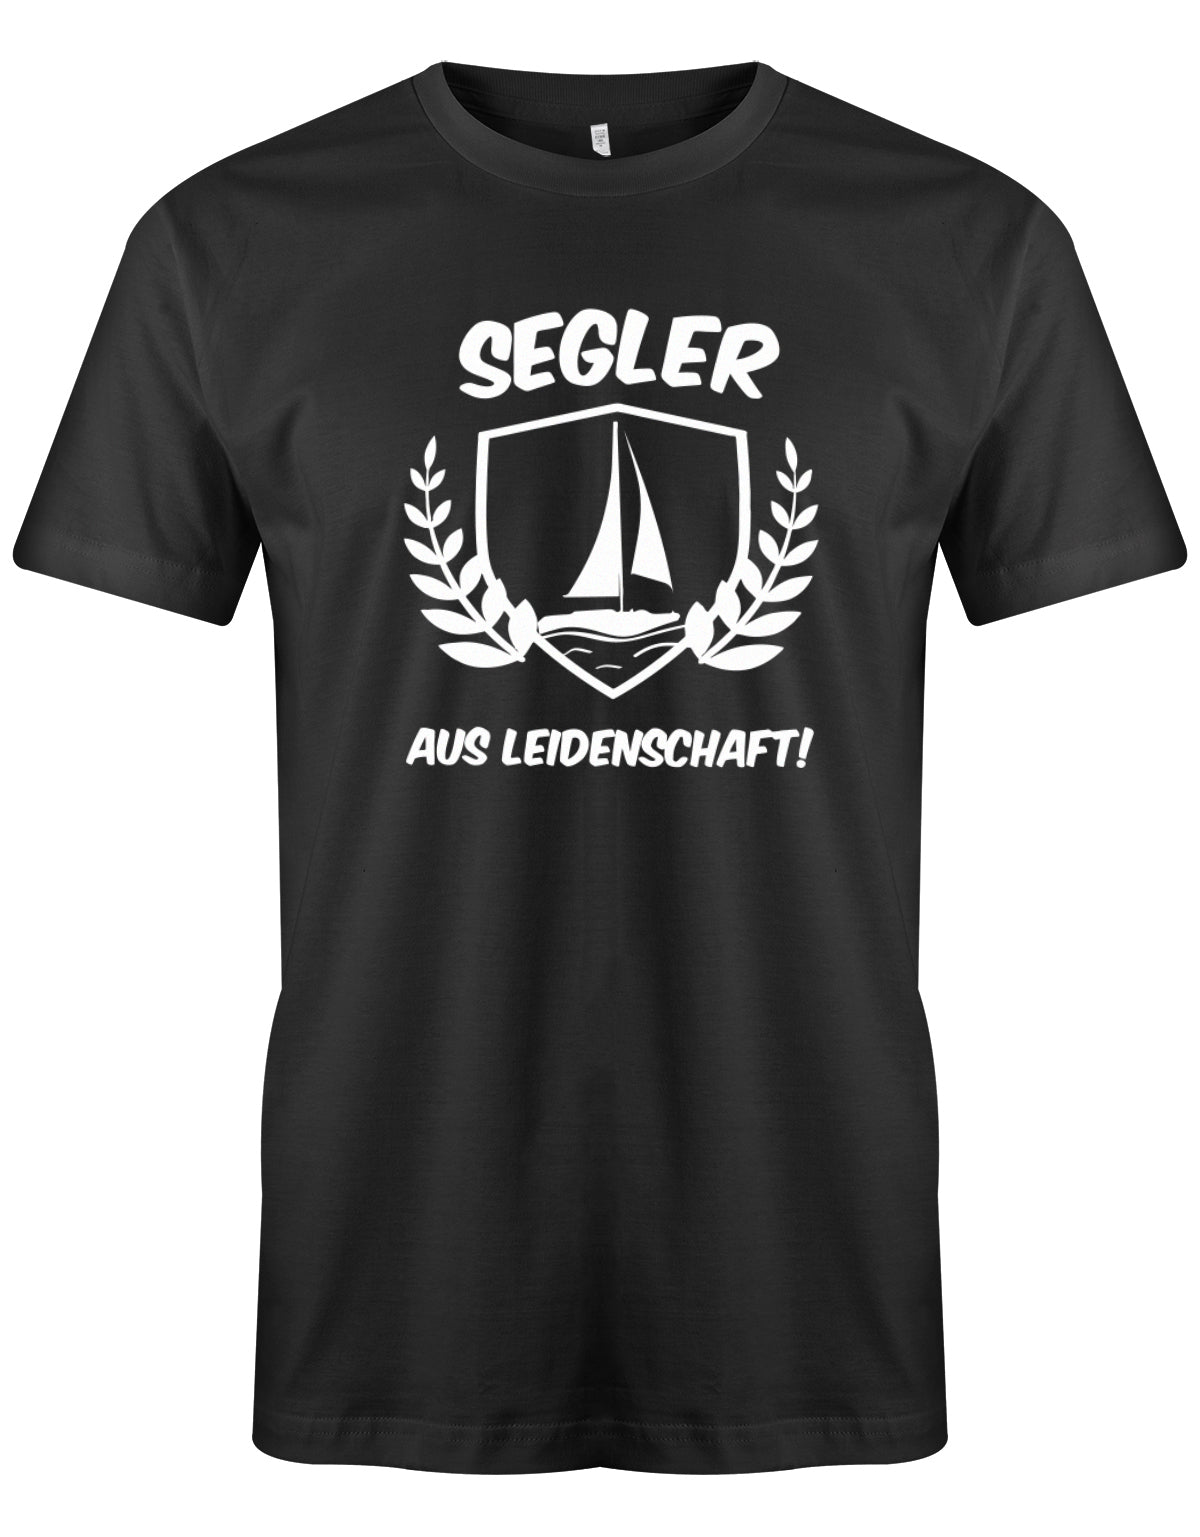 Das Segler t-shirt bedruckt mit "Segler aus Leidenschaft mit Segelboot" Schwarz